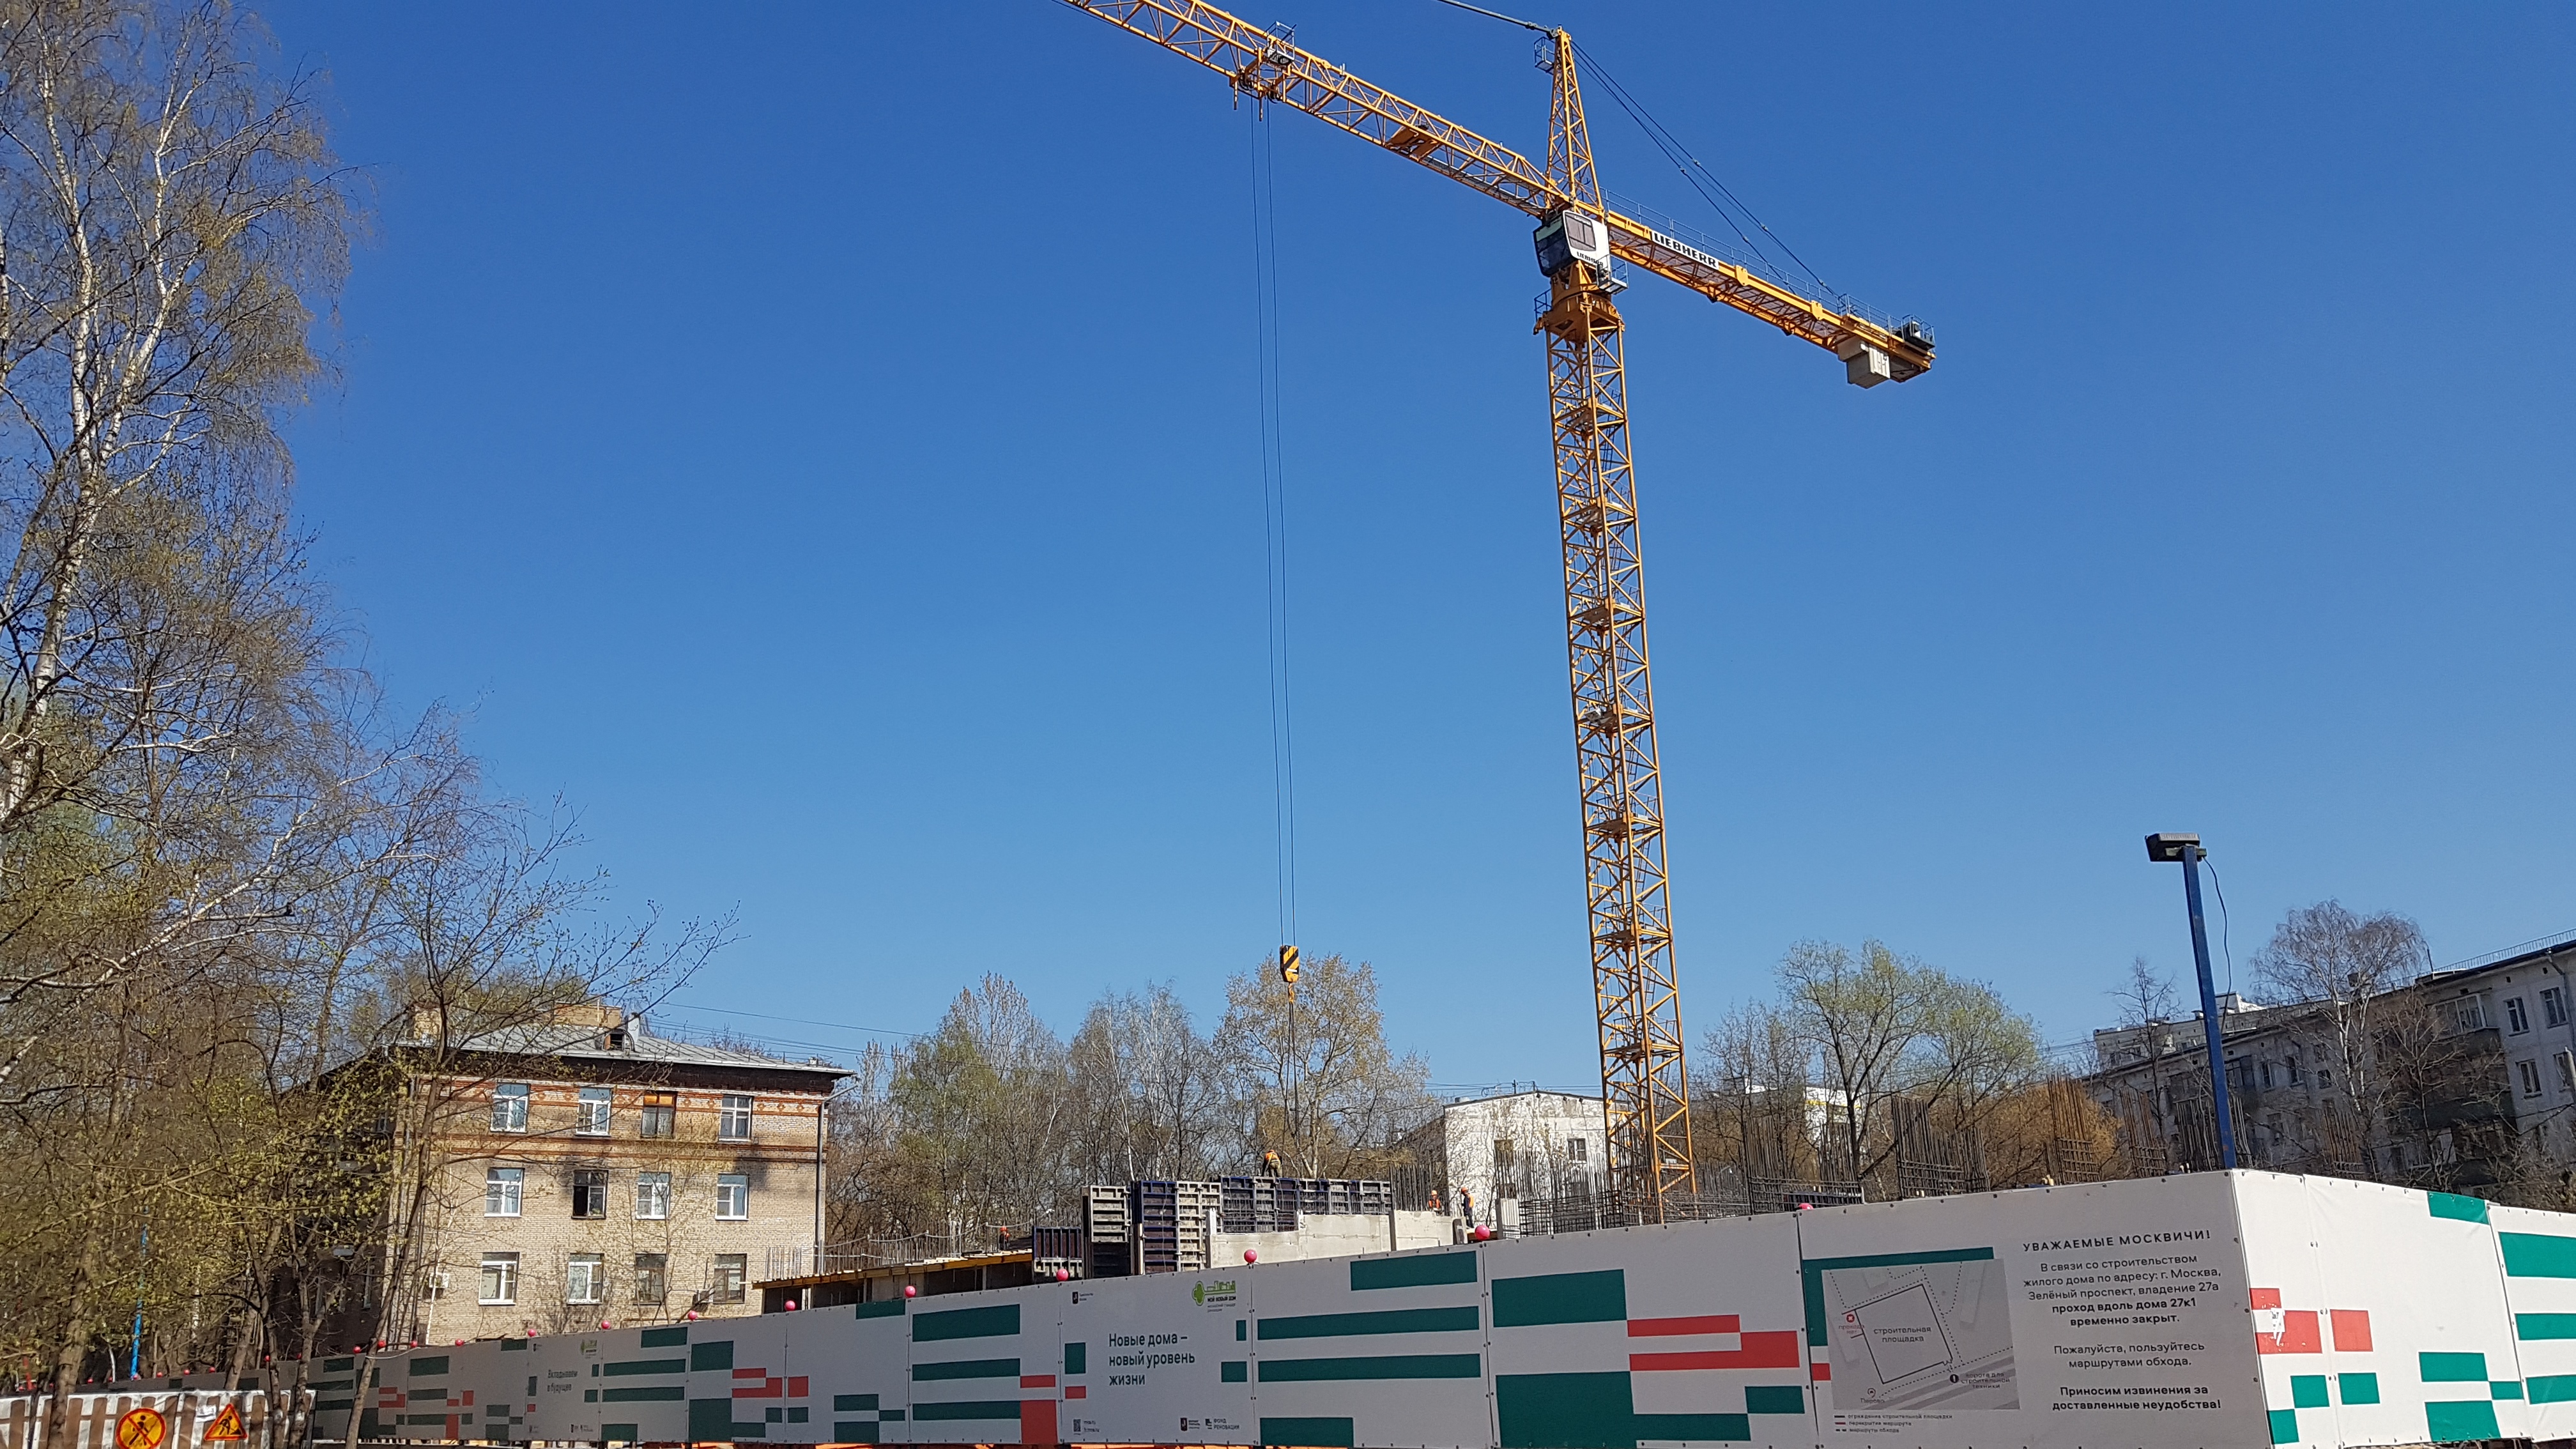 Более 23 тыс. эскроу-счетов для строительства жилья открыто в России - ЦБ